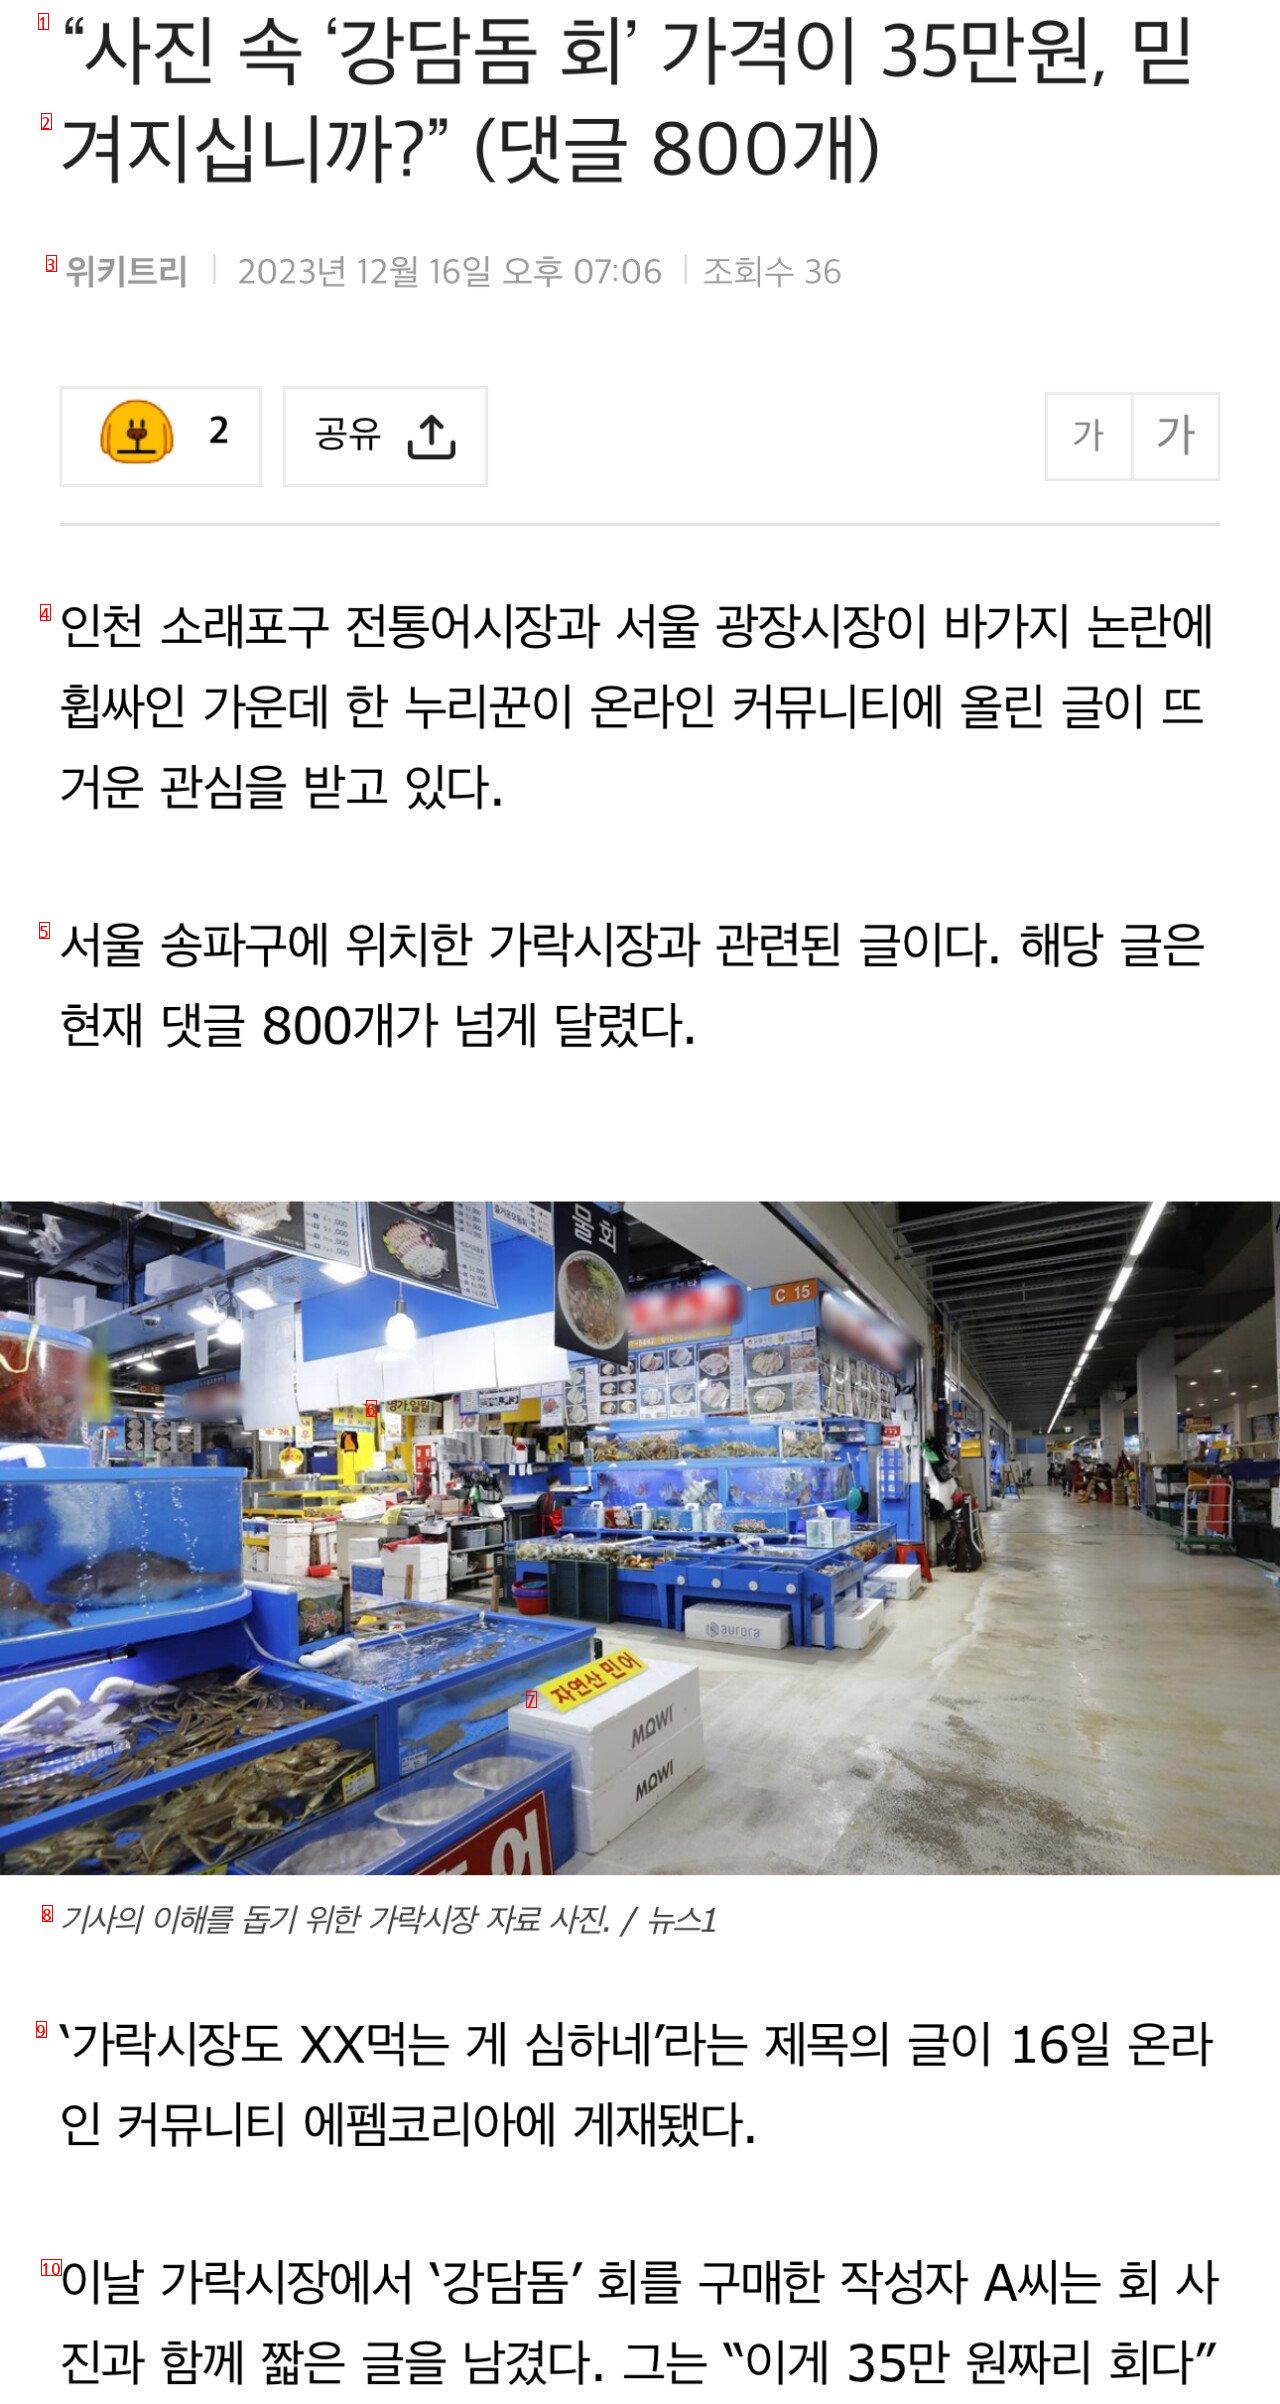 「写真の中のカンダム鯛の刺身」の価格が35万ウォンと信じられますか